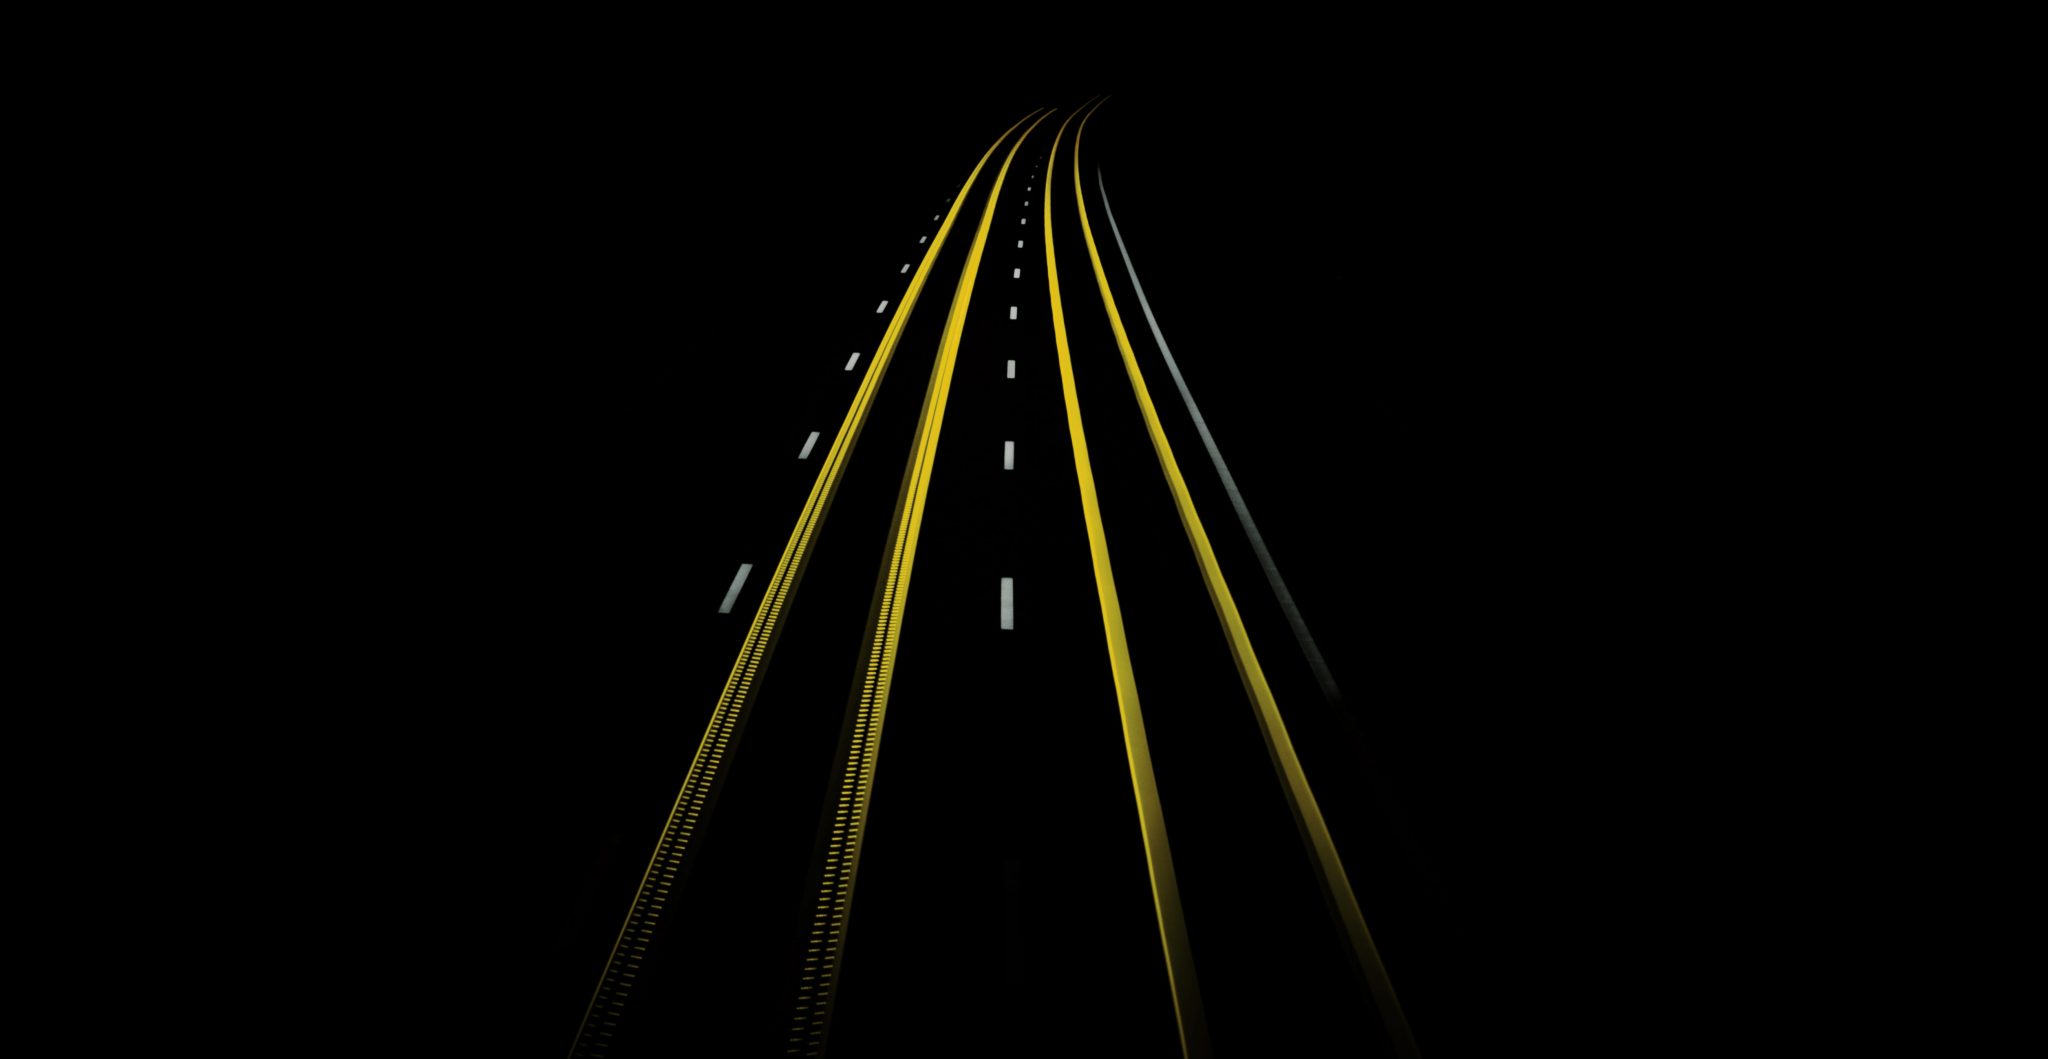 Image en light painting Noir et jaune de feu de véhicules roulant sur une route.